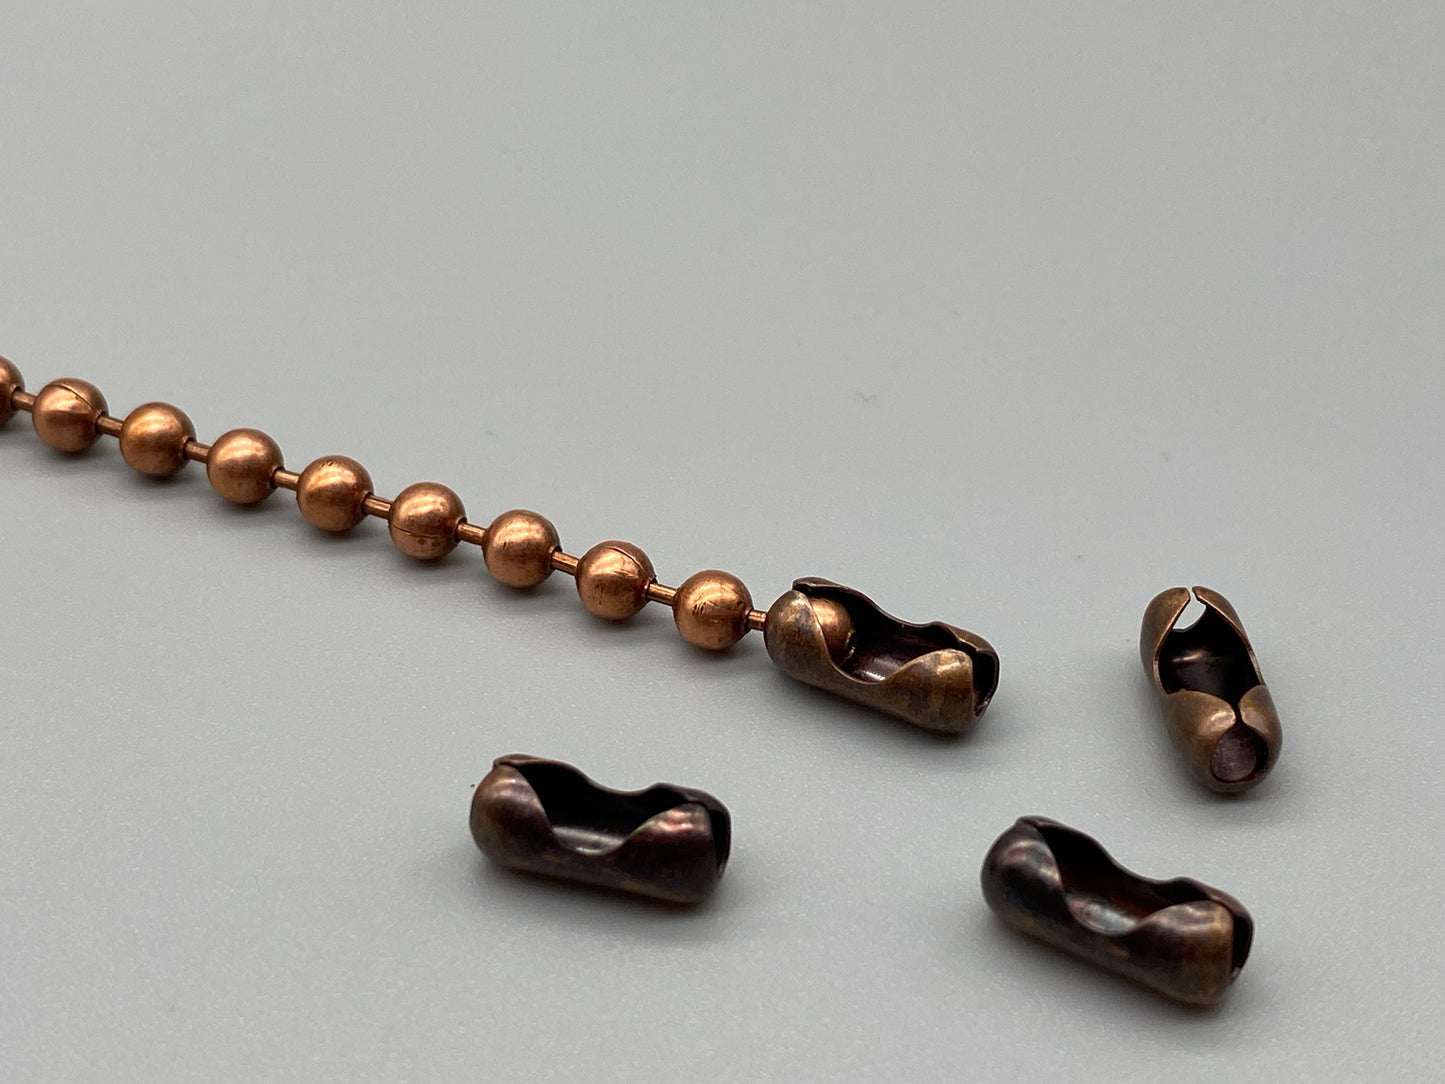 Antique Copper Chain Connectors for No.10 Chain - 5pcs